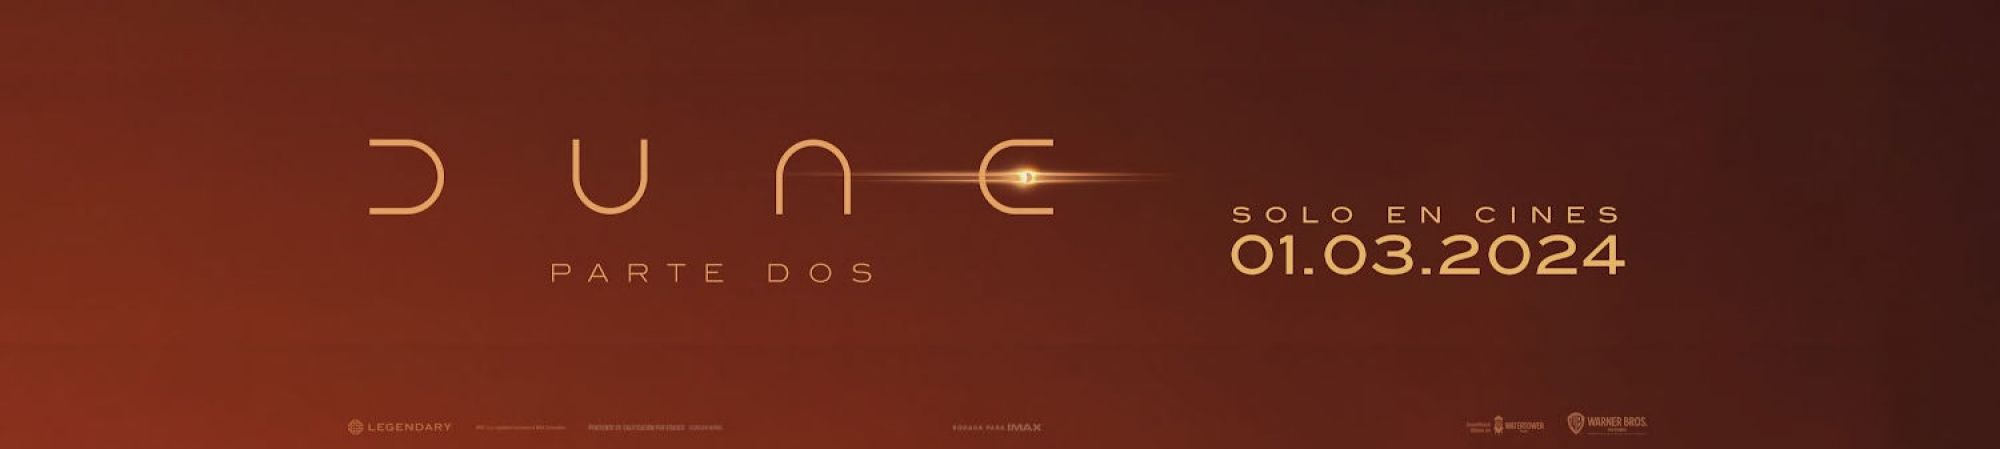 Dune 2 (Banner Superior)